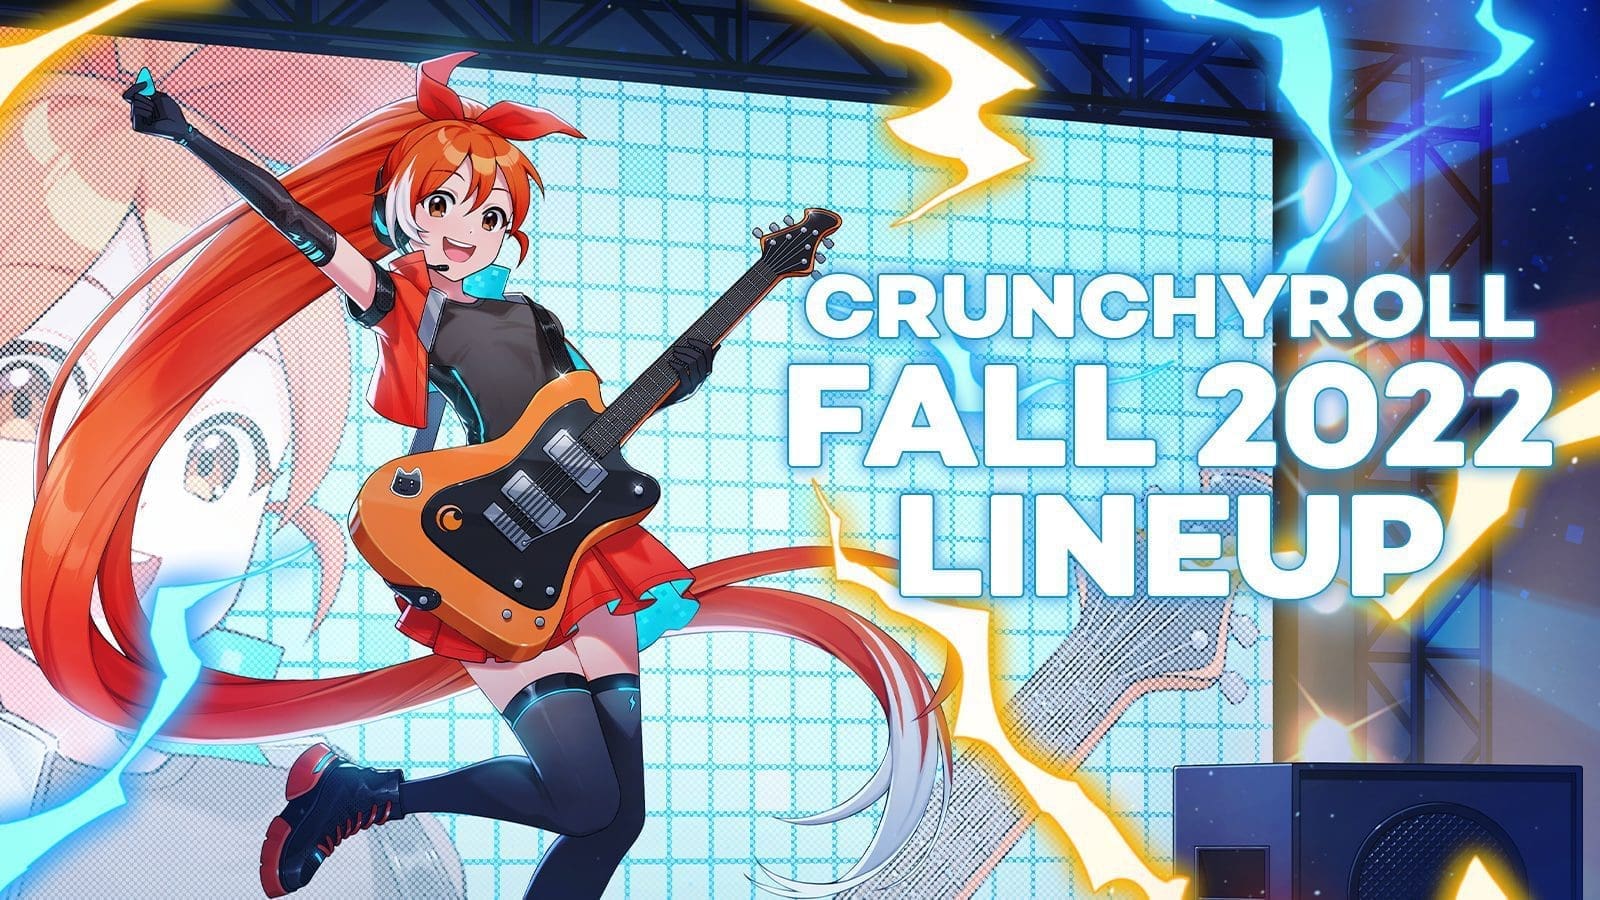 Crunchyroll Fall 2022